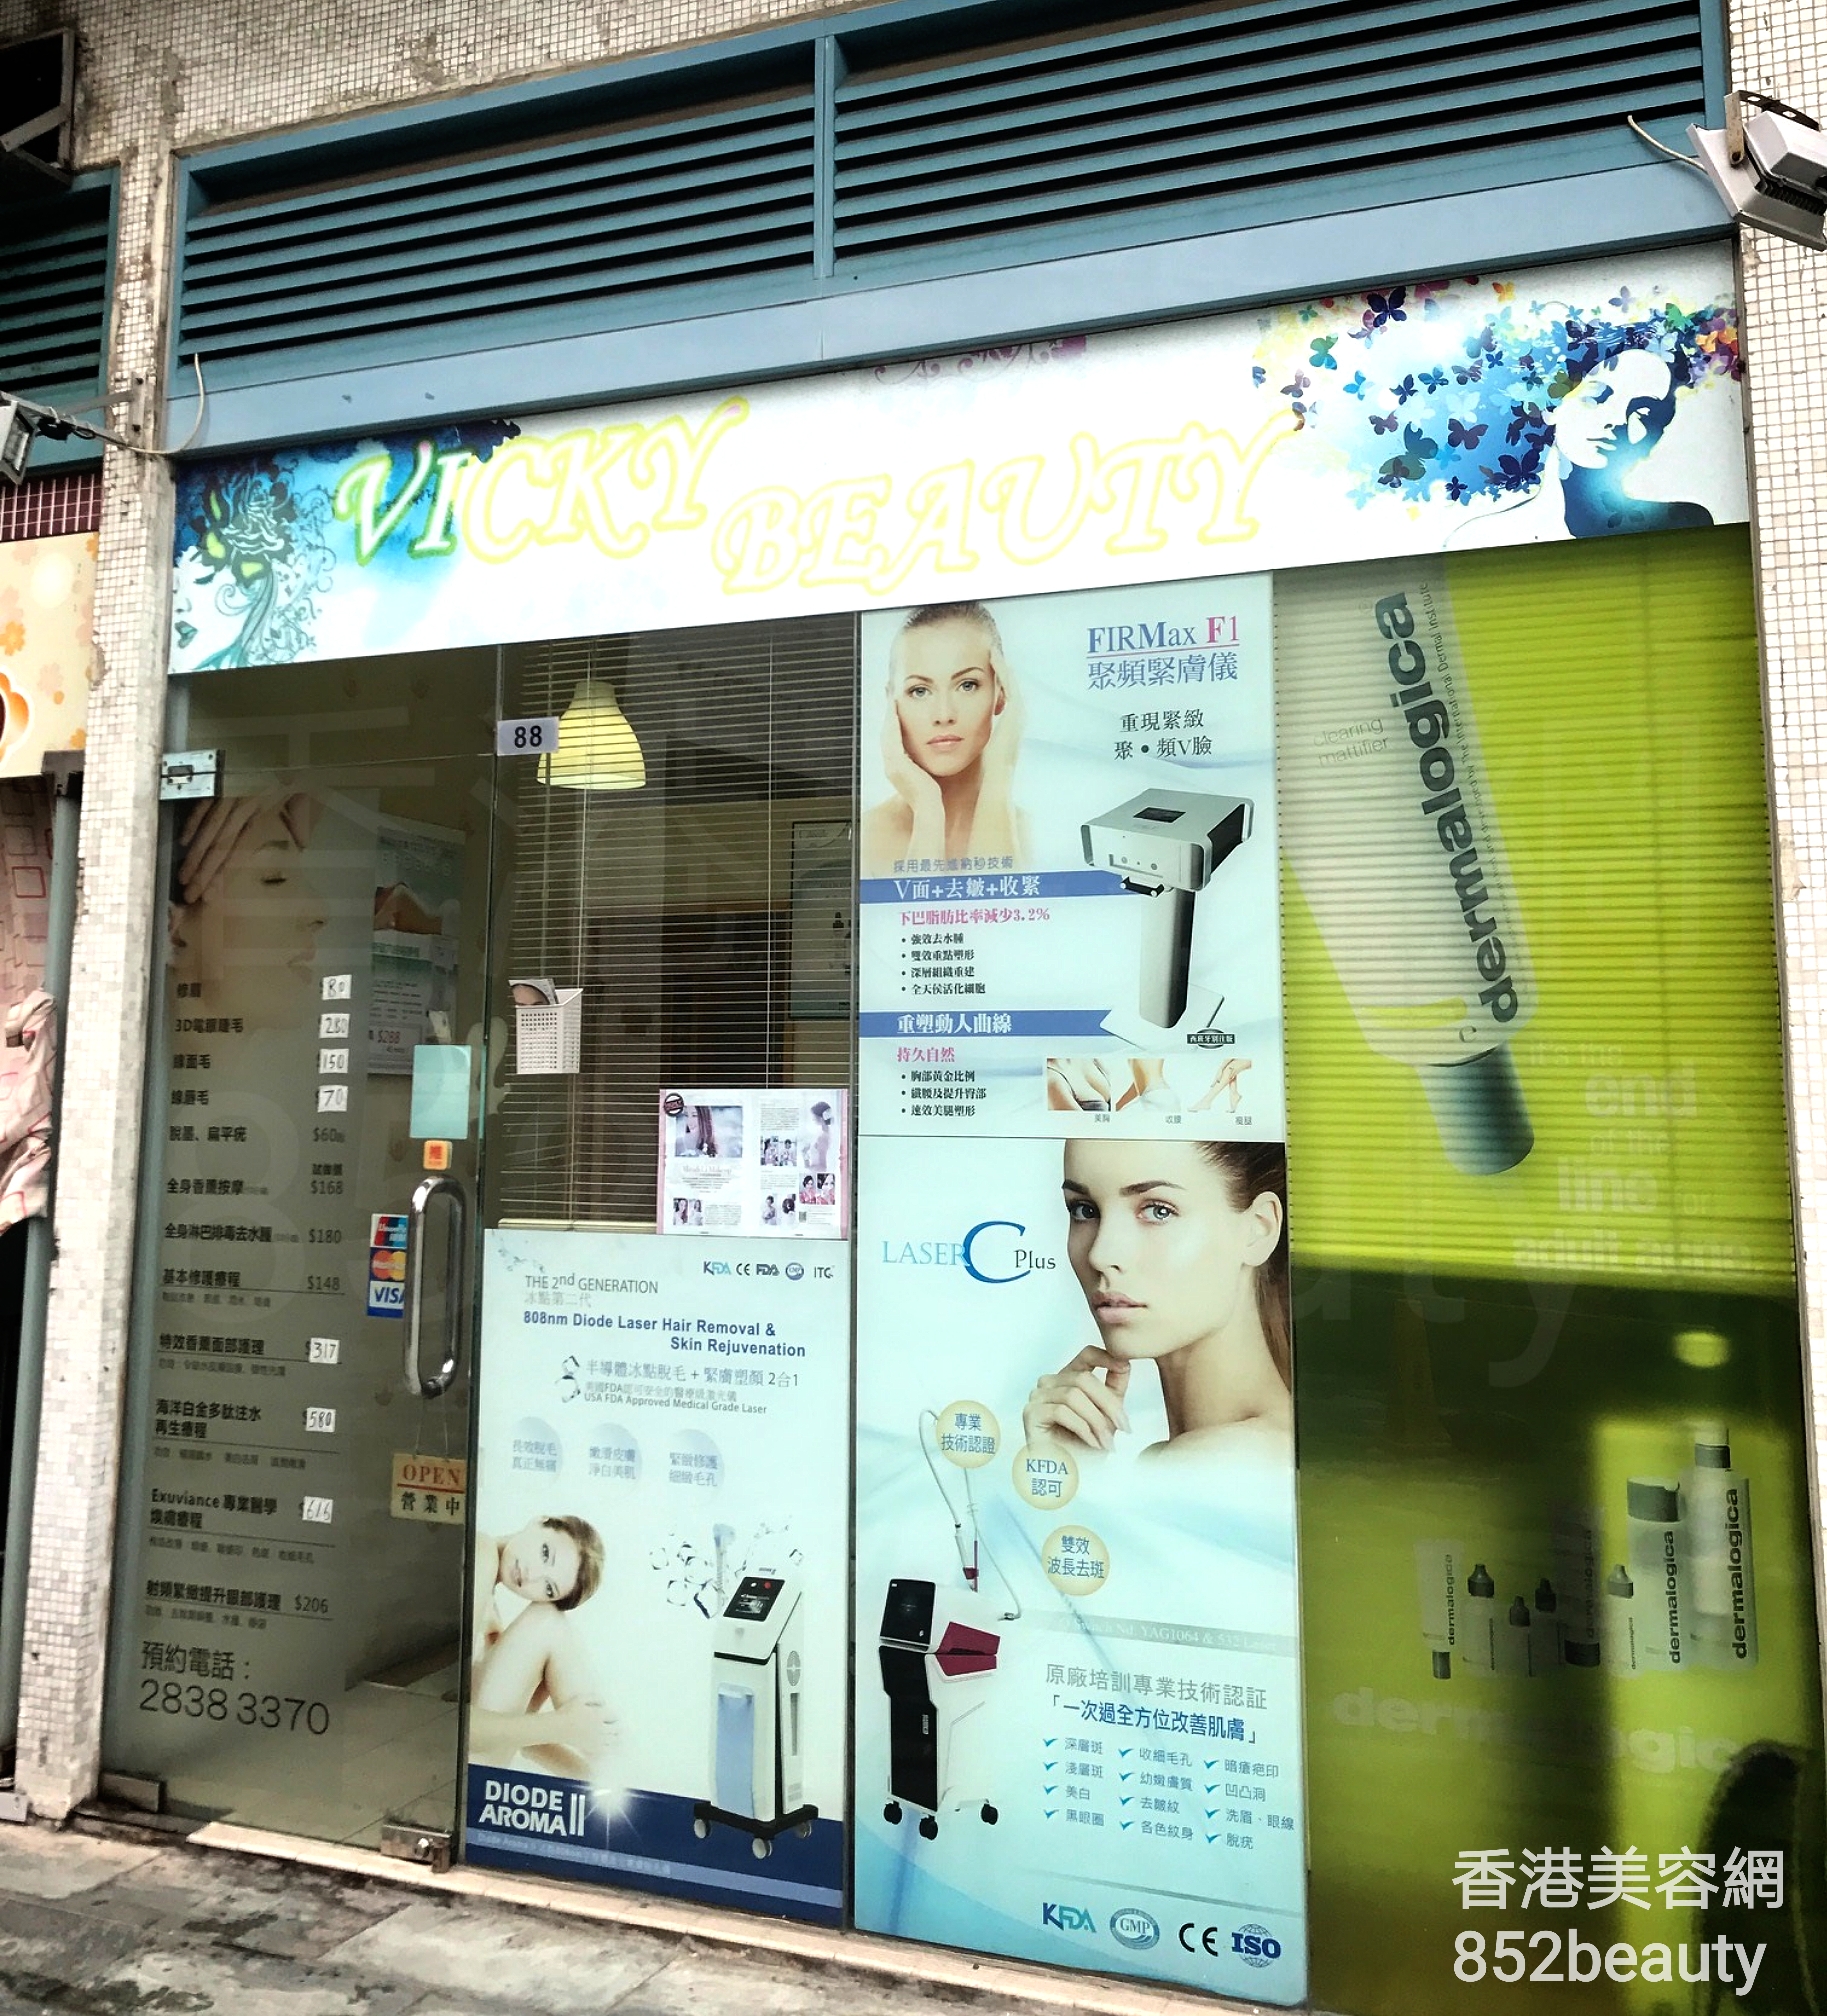 香港美容網 Hong Kong Beauty Salon 美容院 / 美容師: Vicky Beauty